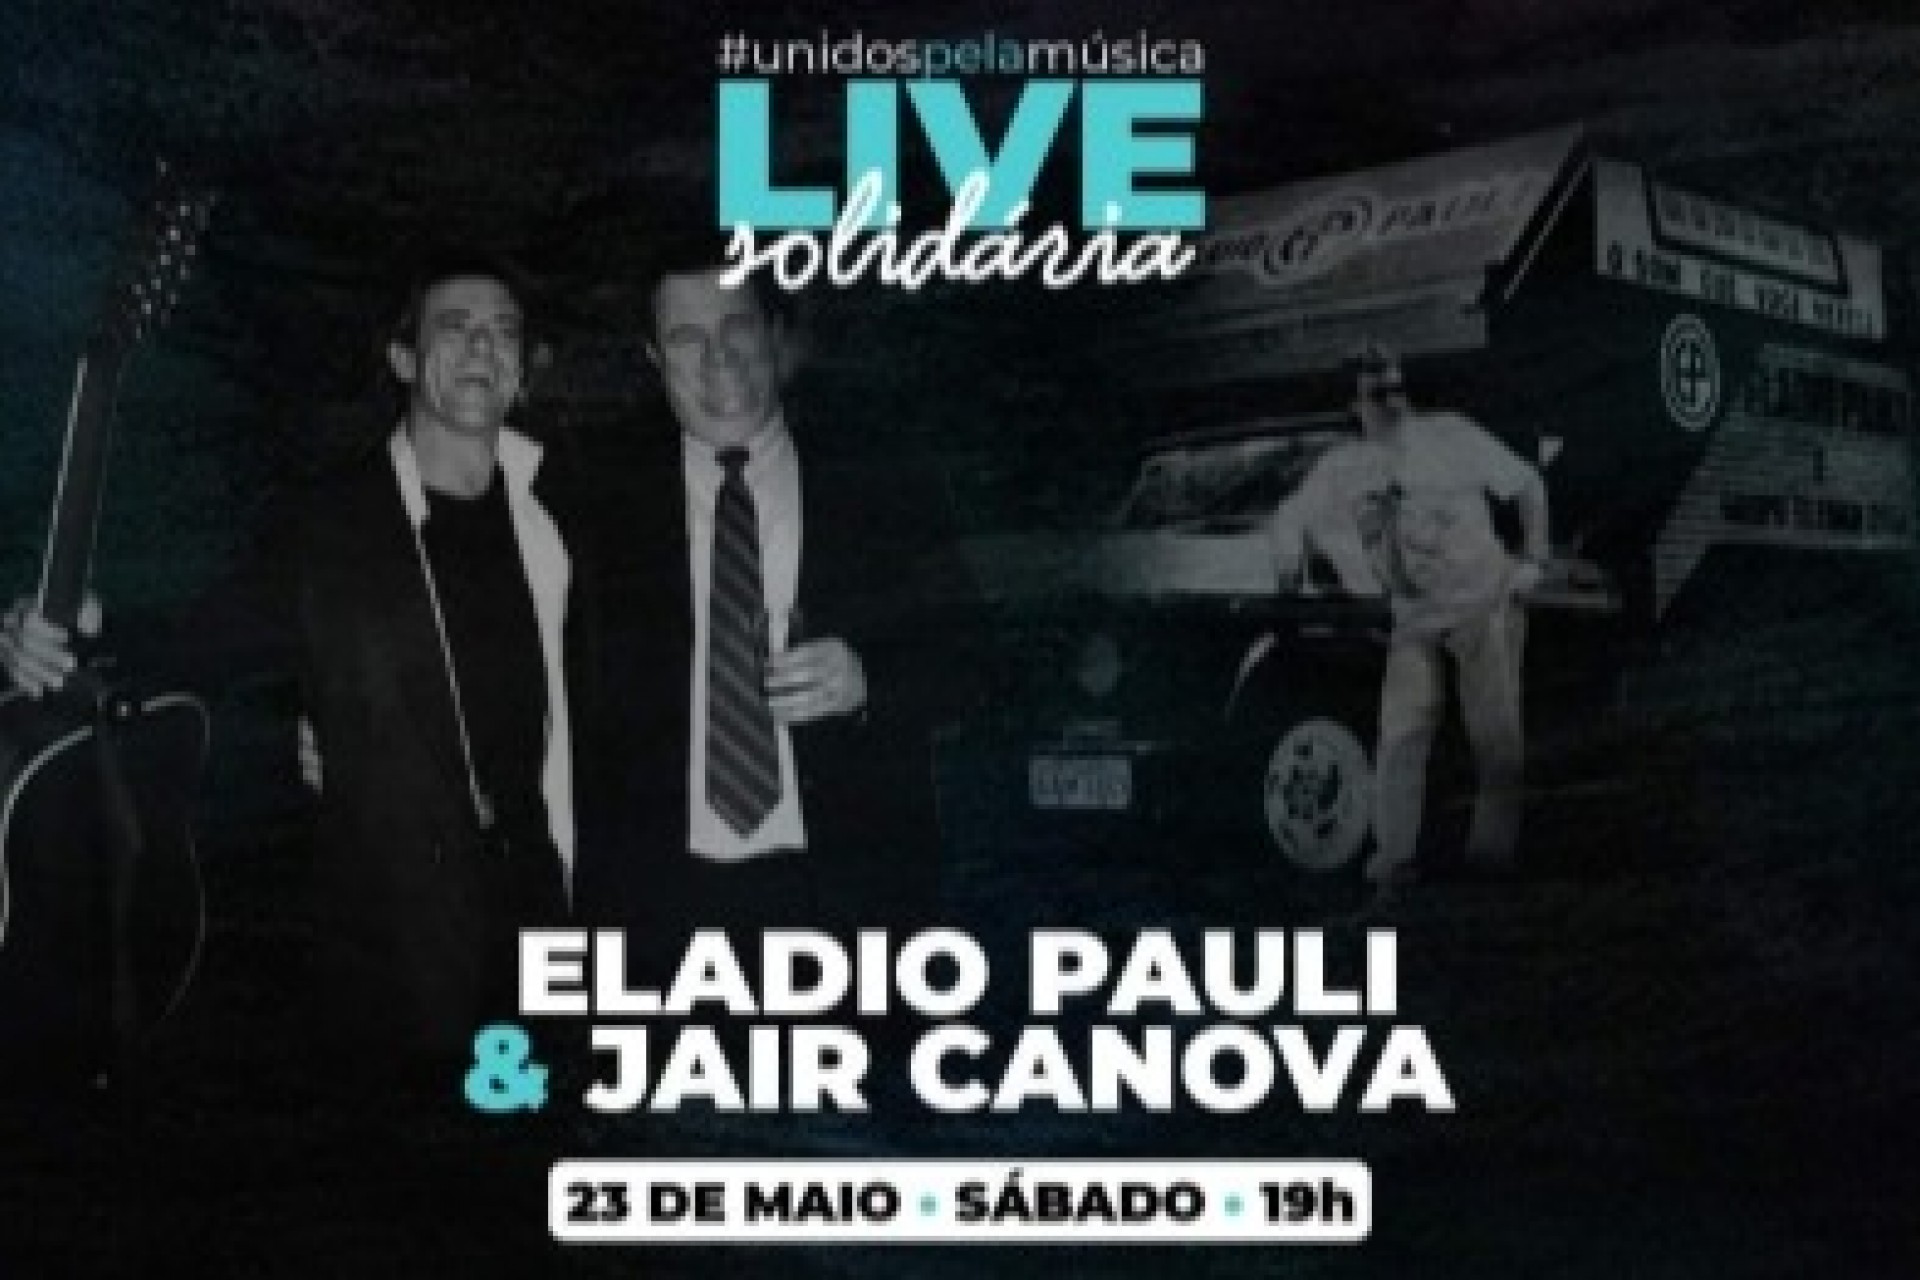 Recordando sucessos, Eladio Pauli & Jair Canova se apresentam hoje em uma super live